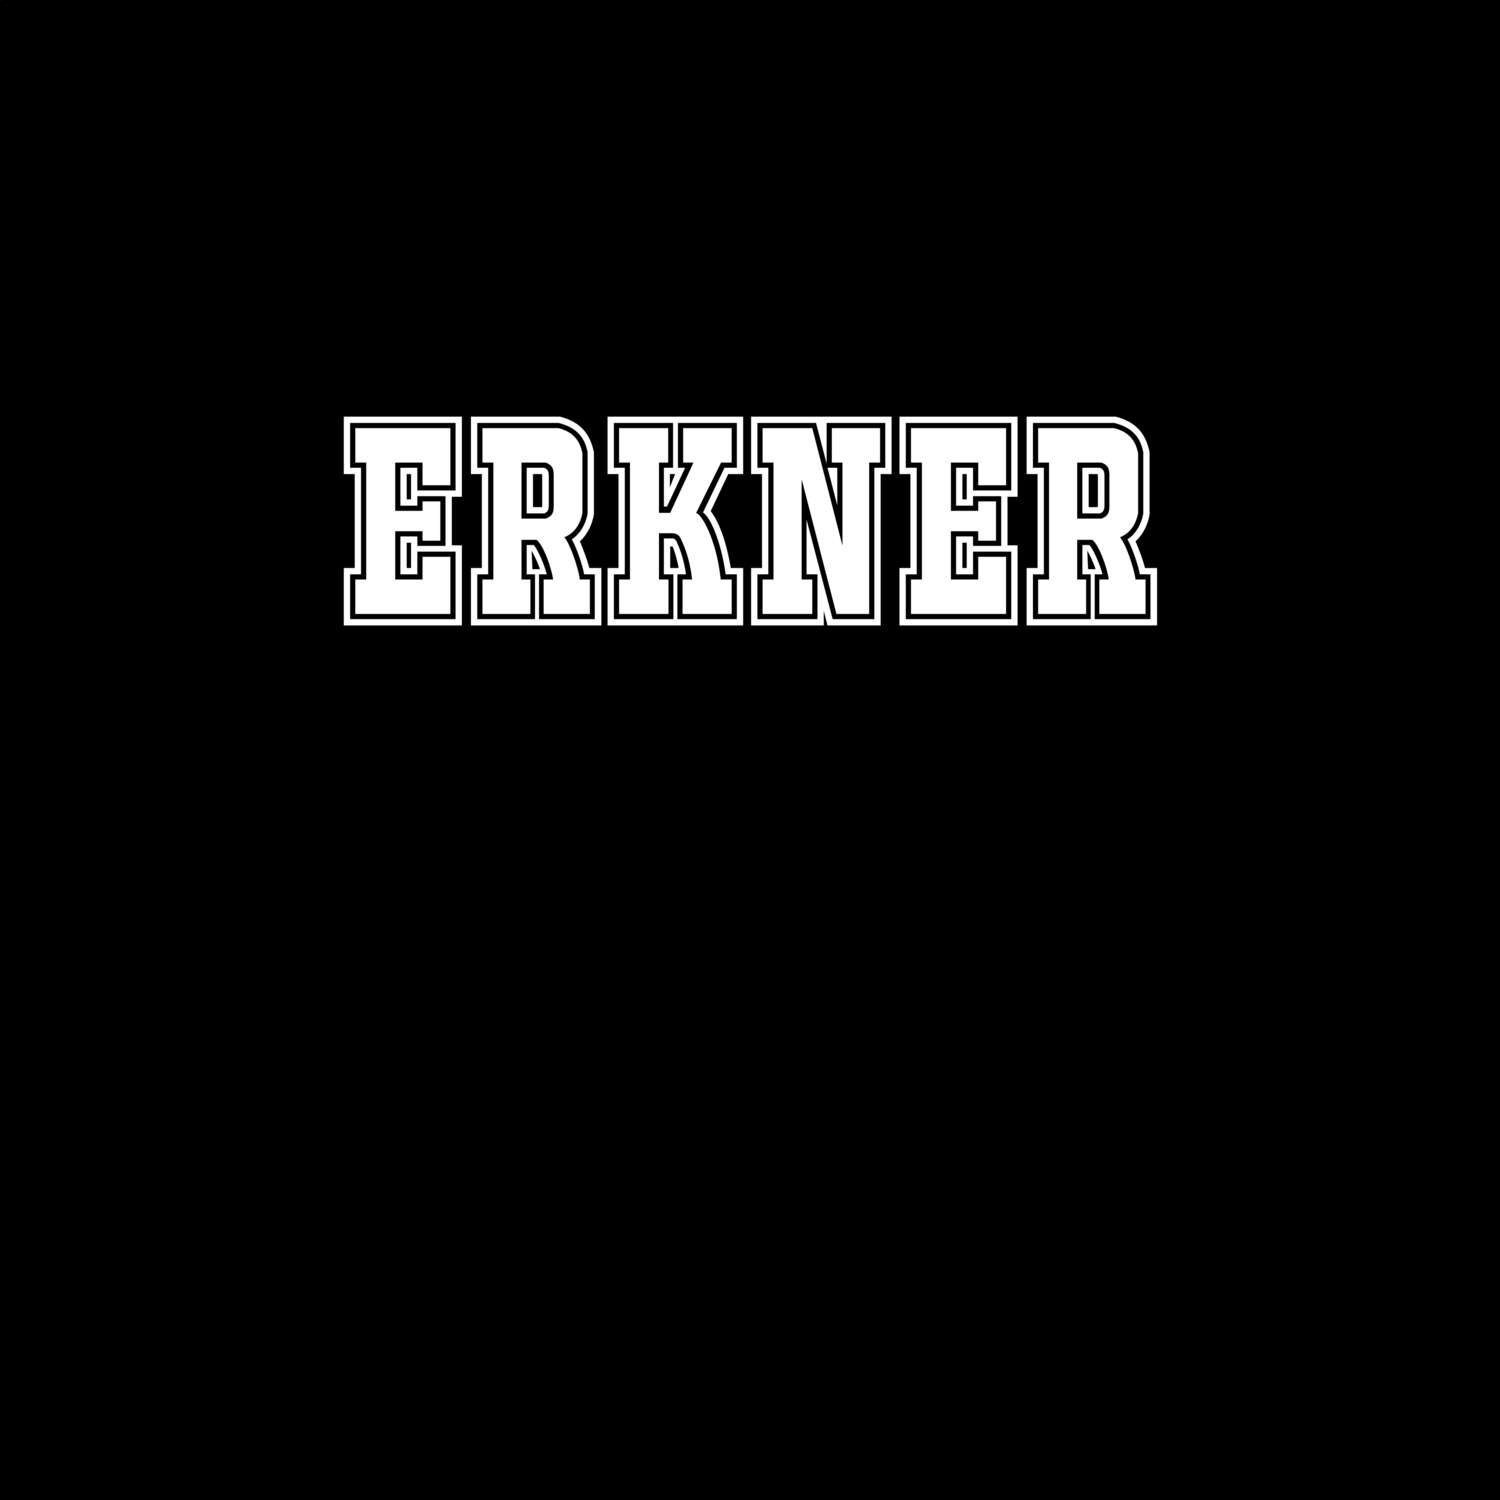 Erkner T-Shirt »Classic«